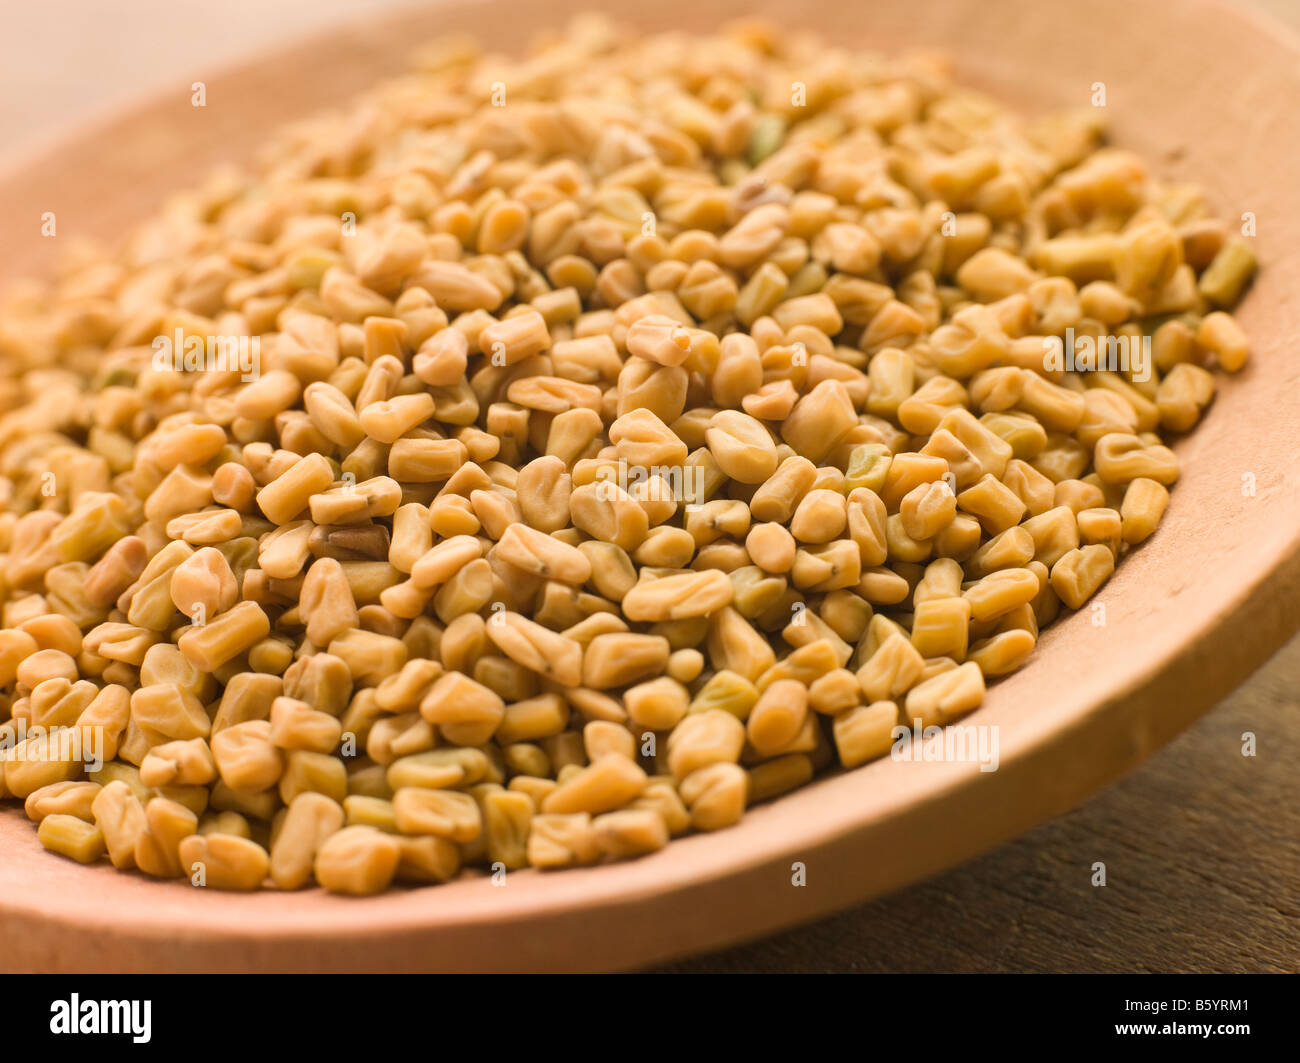 Dish of Whole Fenugreek Stock Photo